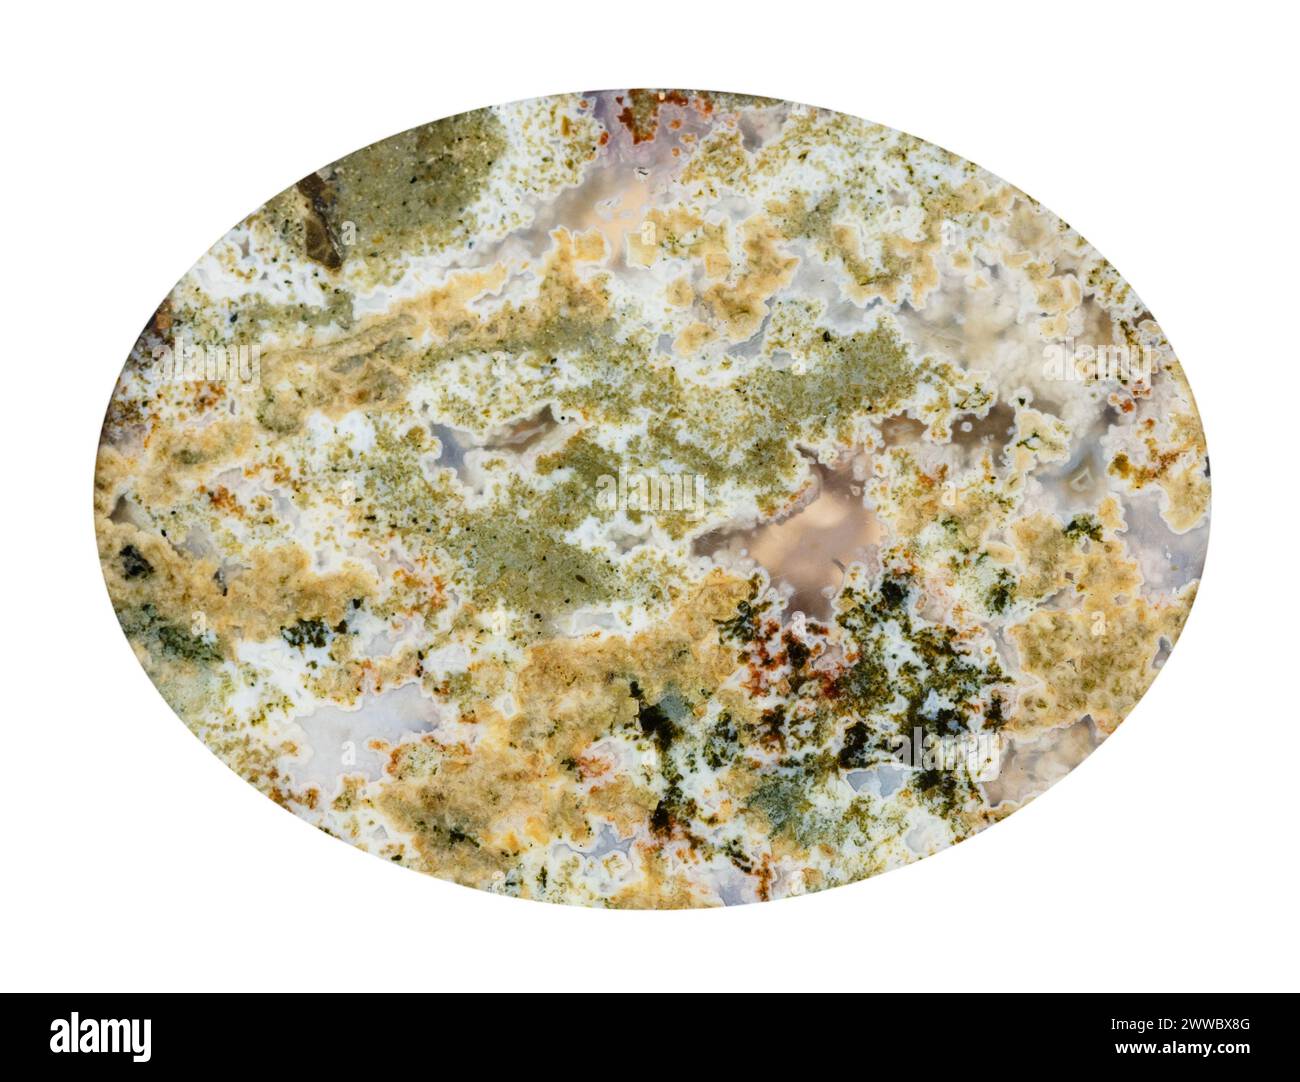 primo piano di un campione di pietra naturale proveniente dalla collezione geologica - cabochon proveniente da pietre preziose di agata di muschio lucida isolata su sfondo bianco Foto Stock